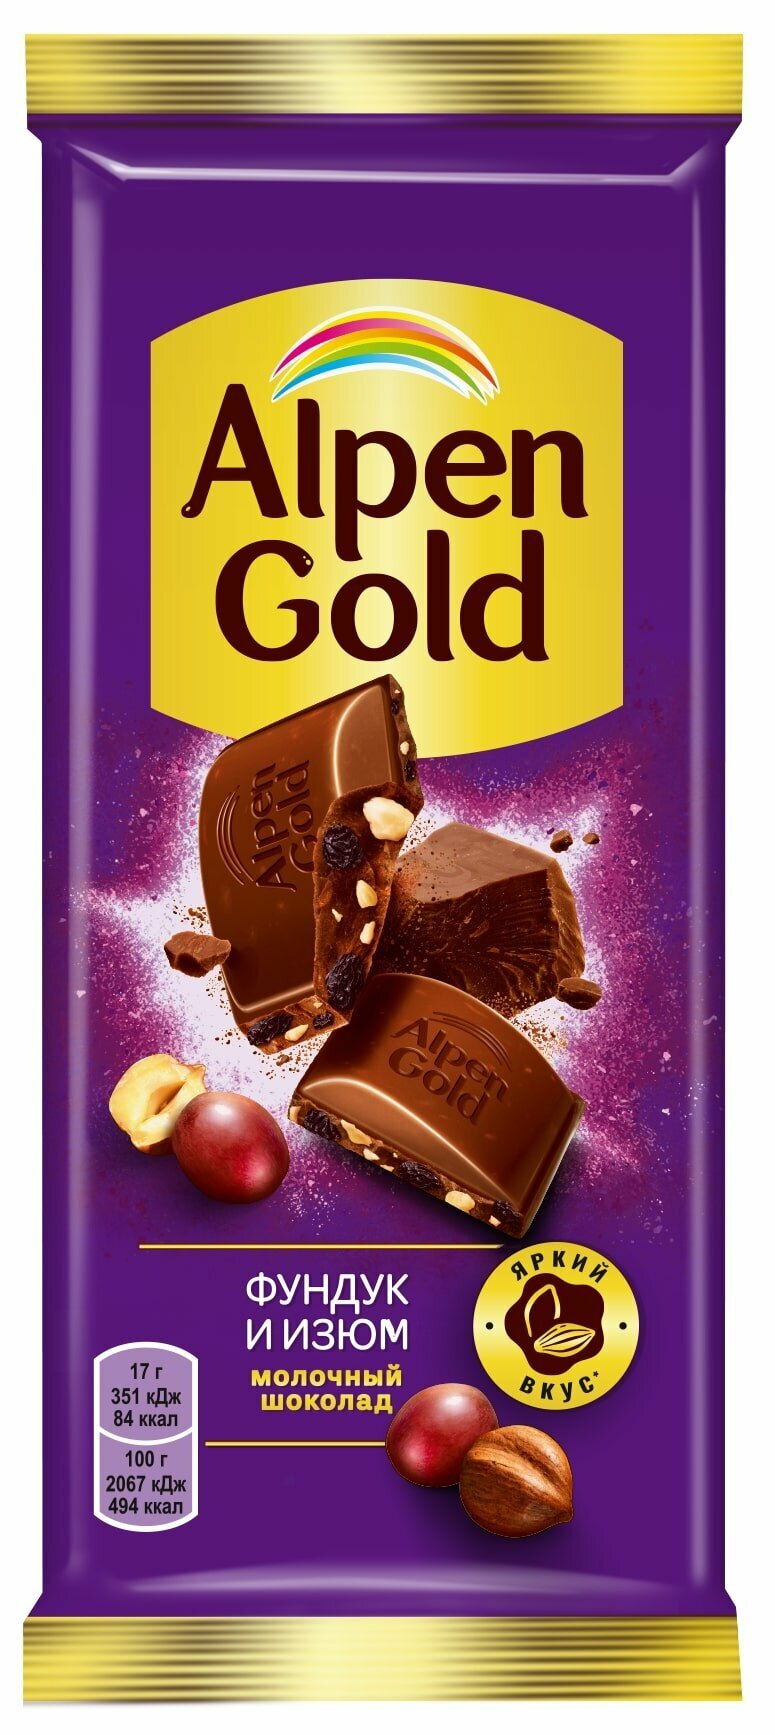 Шоколад Alpen Gold Фундук Изюм 85 г